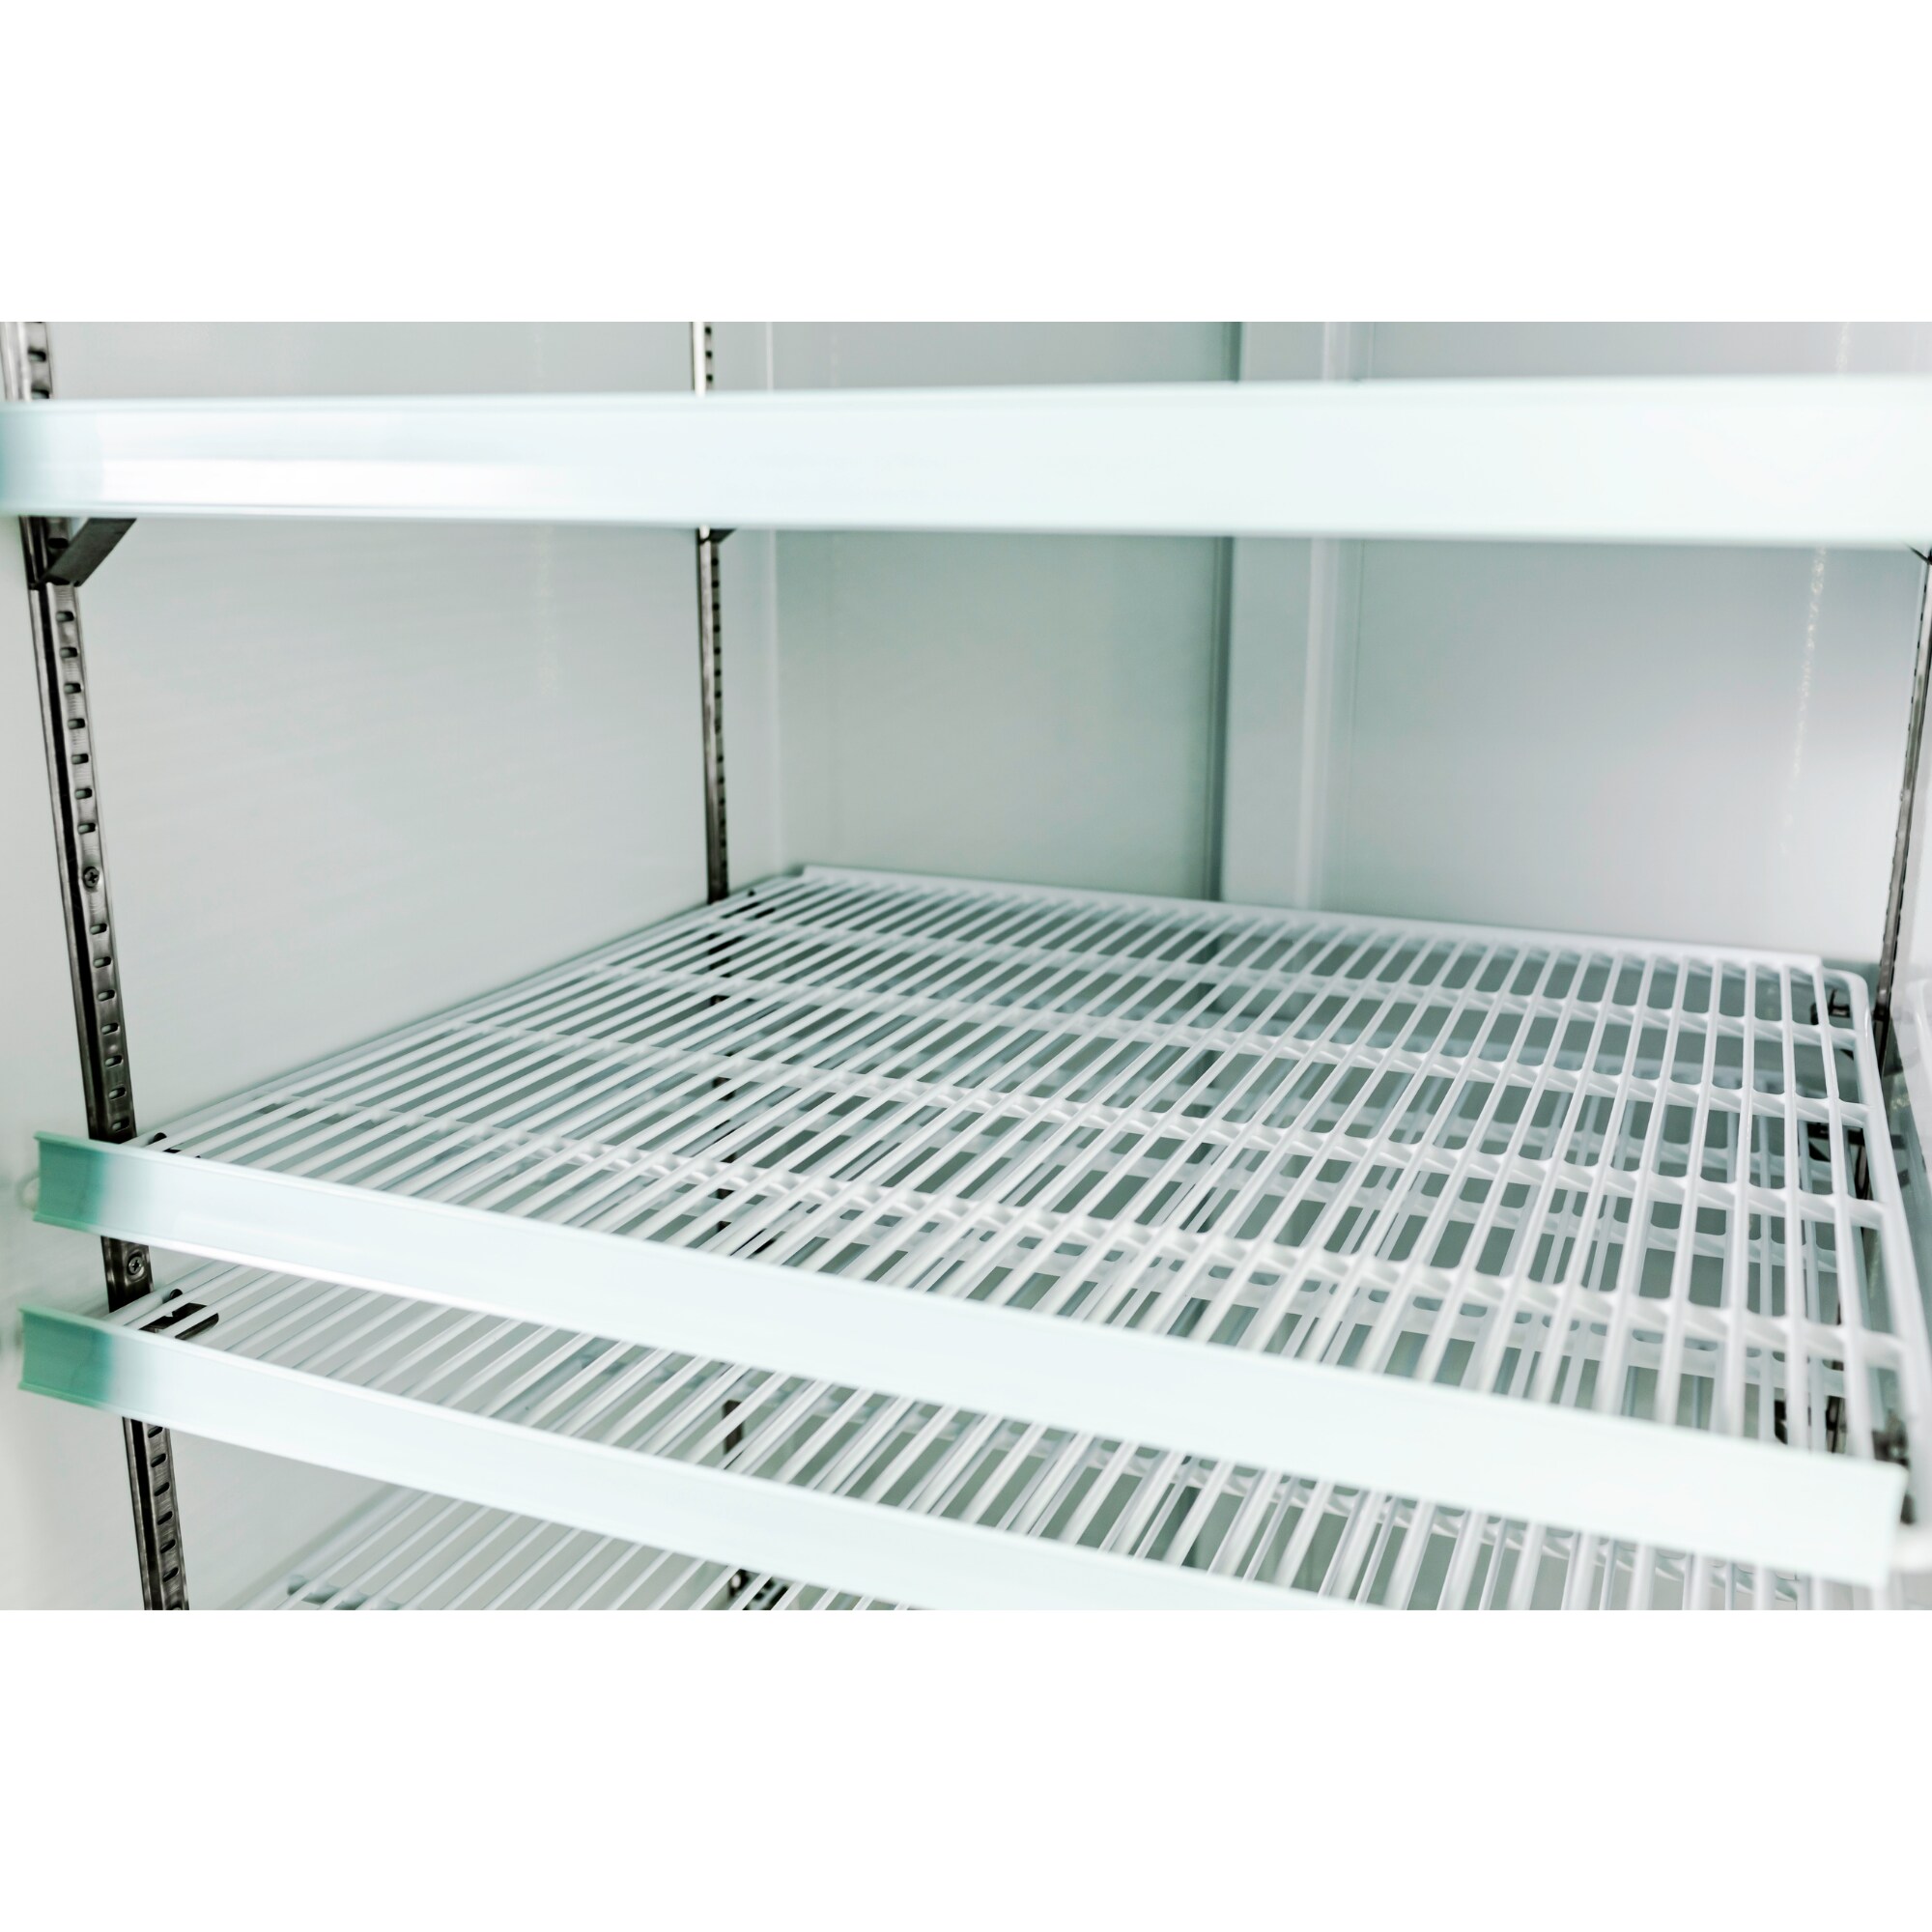 2 Glass Doors SABA Commercial Merchandiser Refrigerator Display Case 